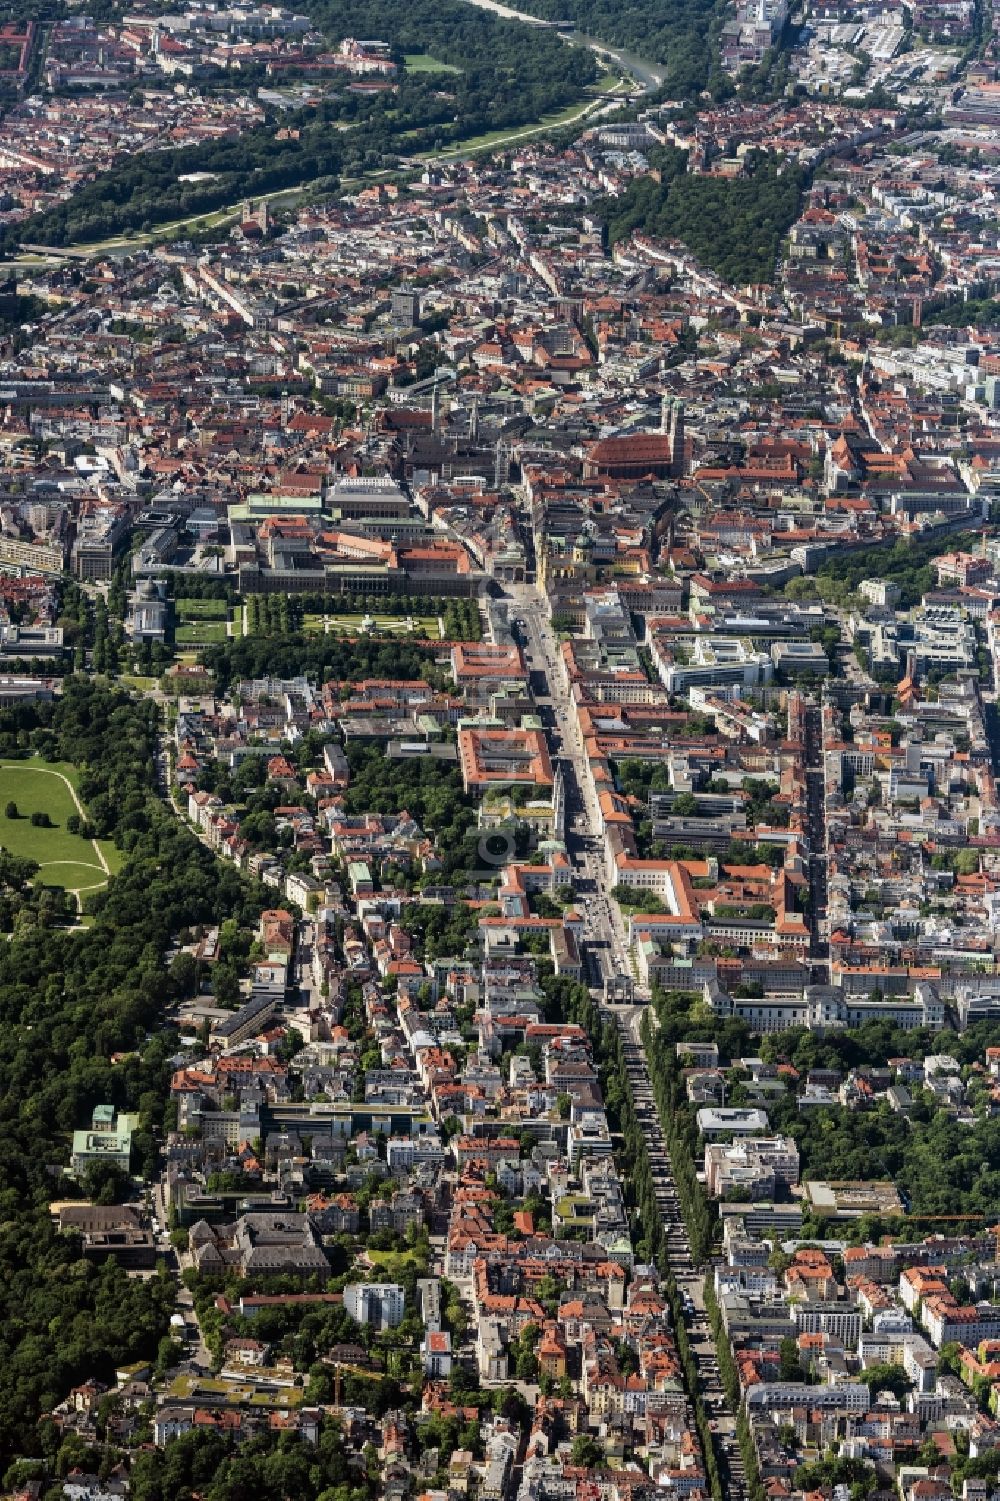 Luftbild München - Stadtzentrum im Innenstadtbereich entlang der Ludwigstraße in München im Bundesland Bayern, Deutschland